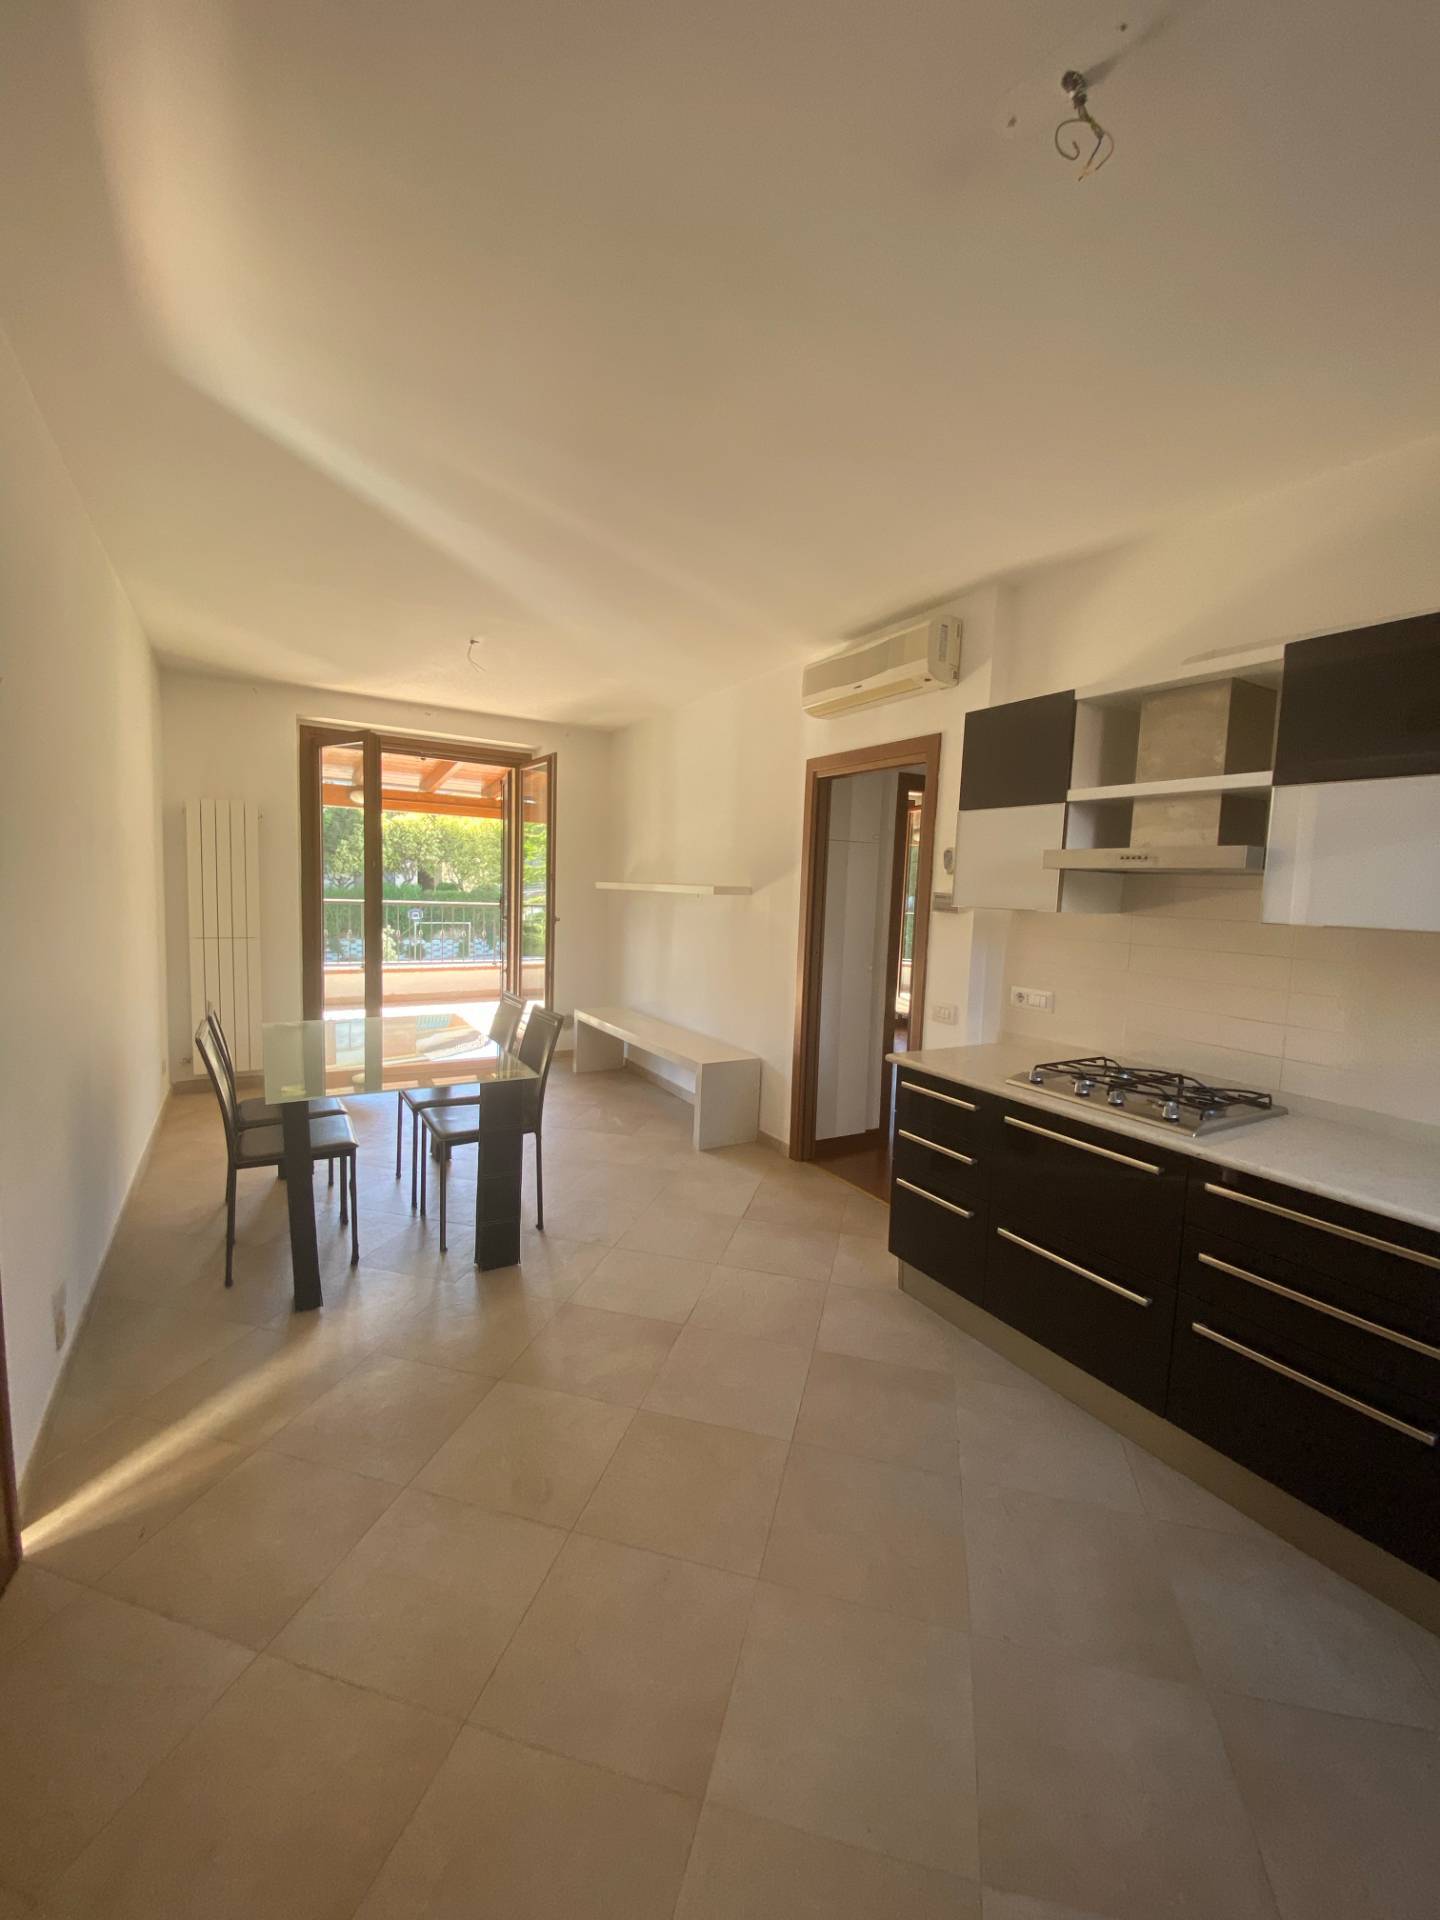 Appartamento in vendita a Fermo, 4 locali, prezzo € 134.000 | PortaleAgenzieImmobiliari.it